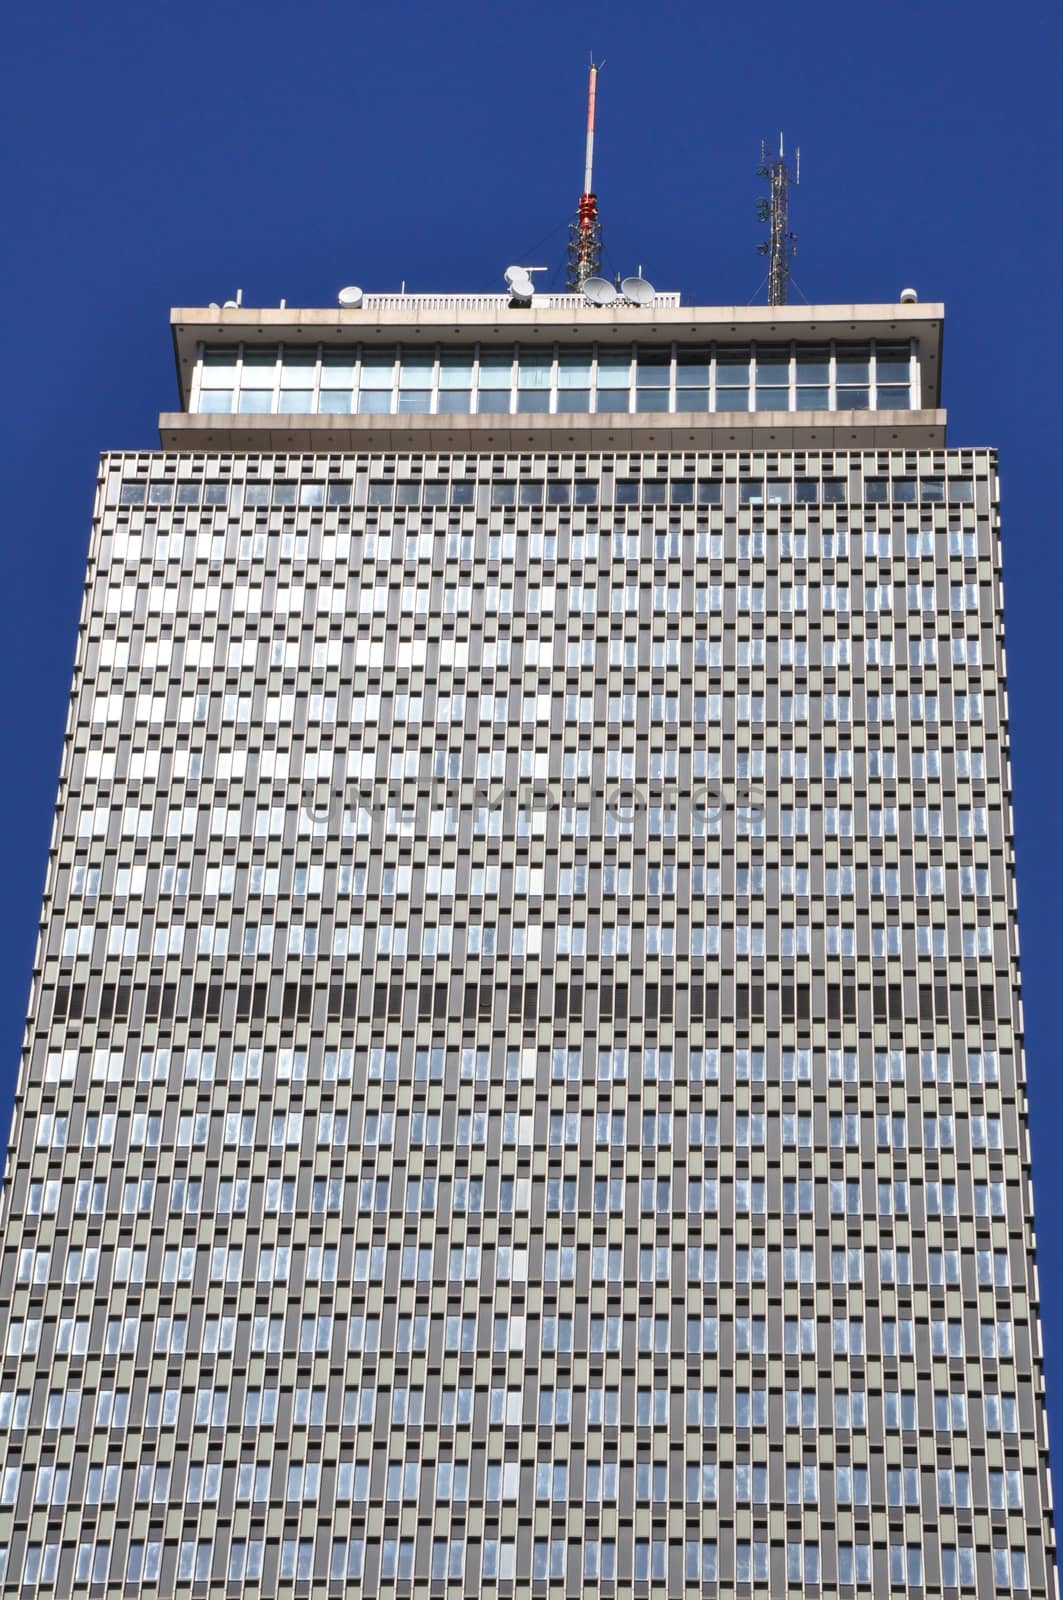 Prudential Tower in Boston, Massachusetts by sainaniritu